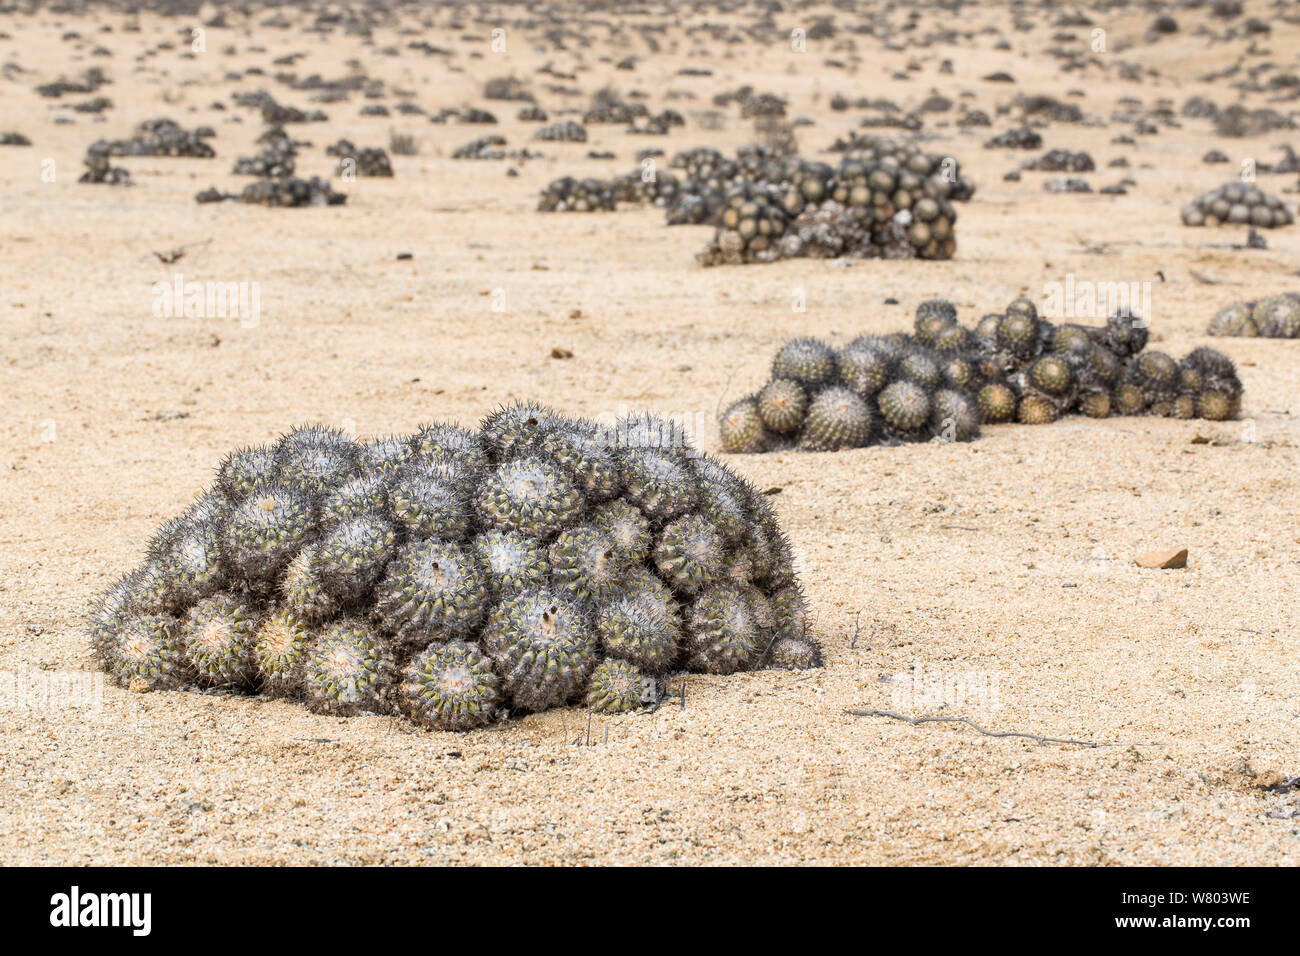 Barrel cactus (Copiapoa columna alba) tous orientés vers le nord afin de minimiser les dommages causés par le soleil de midi. Le Parc National de Pan de Azucar, le Chili. Banque D'Images